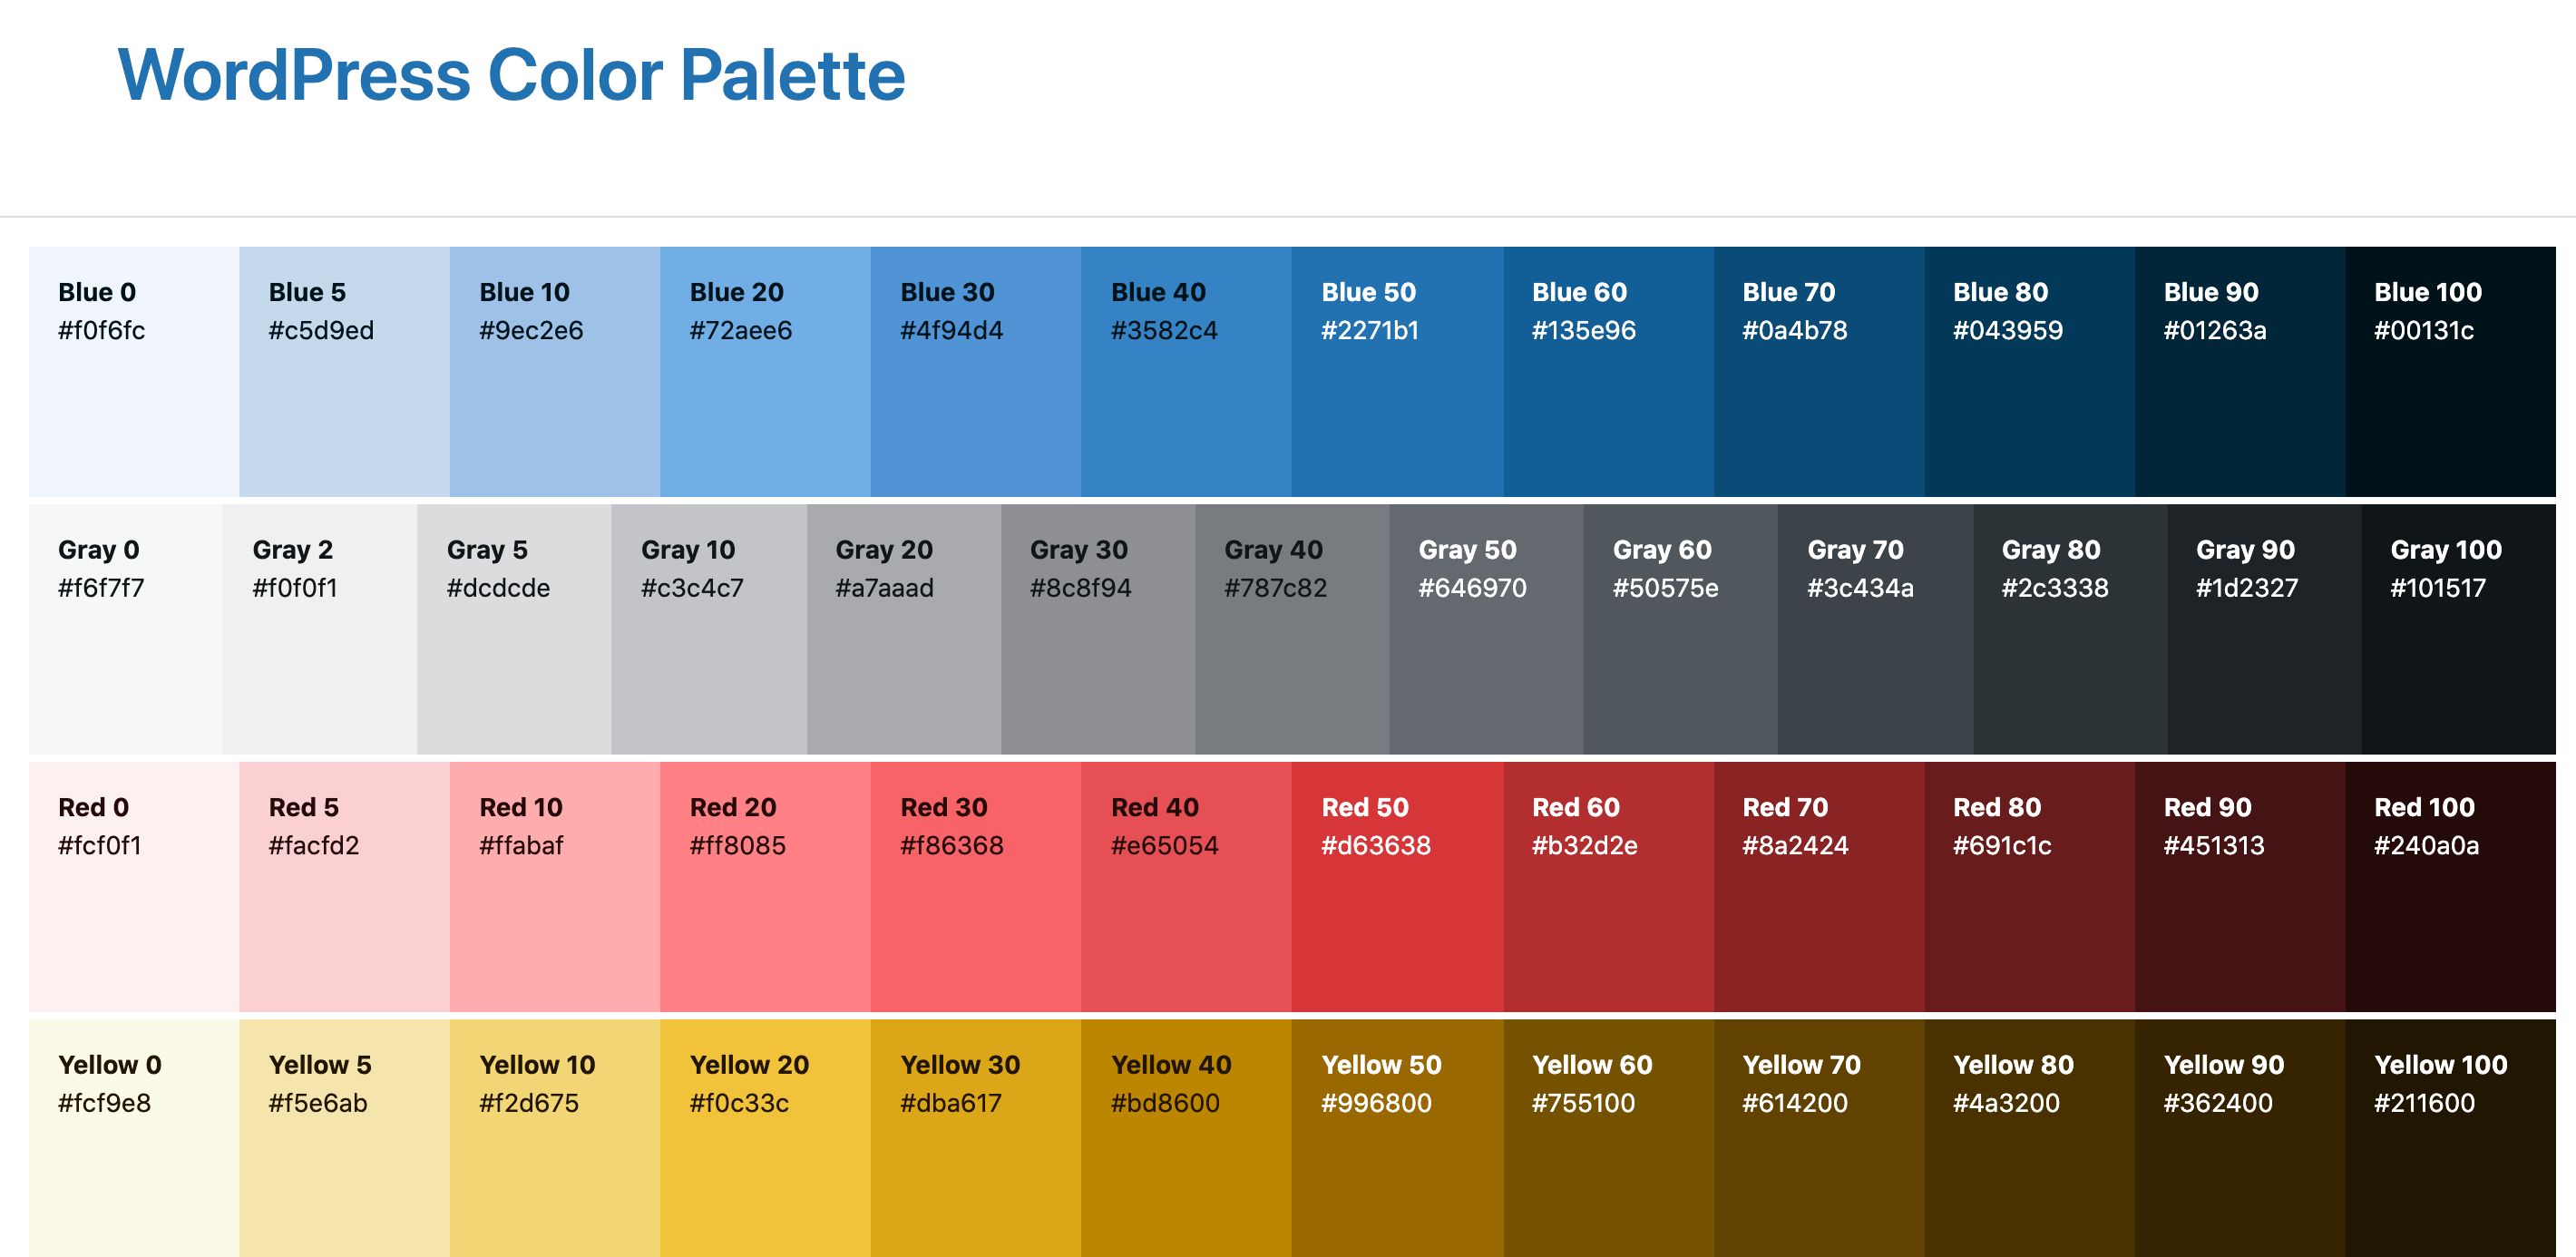 The WordPress 5.7 Esperanza color palette.